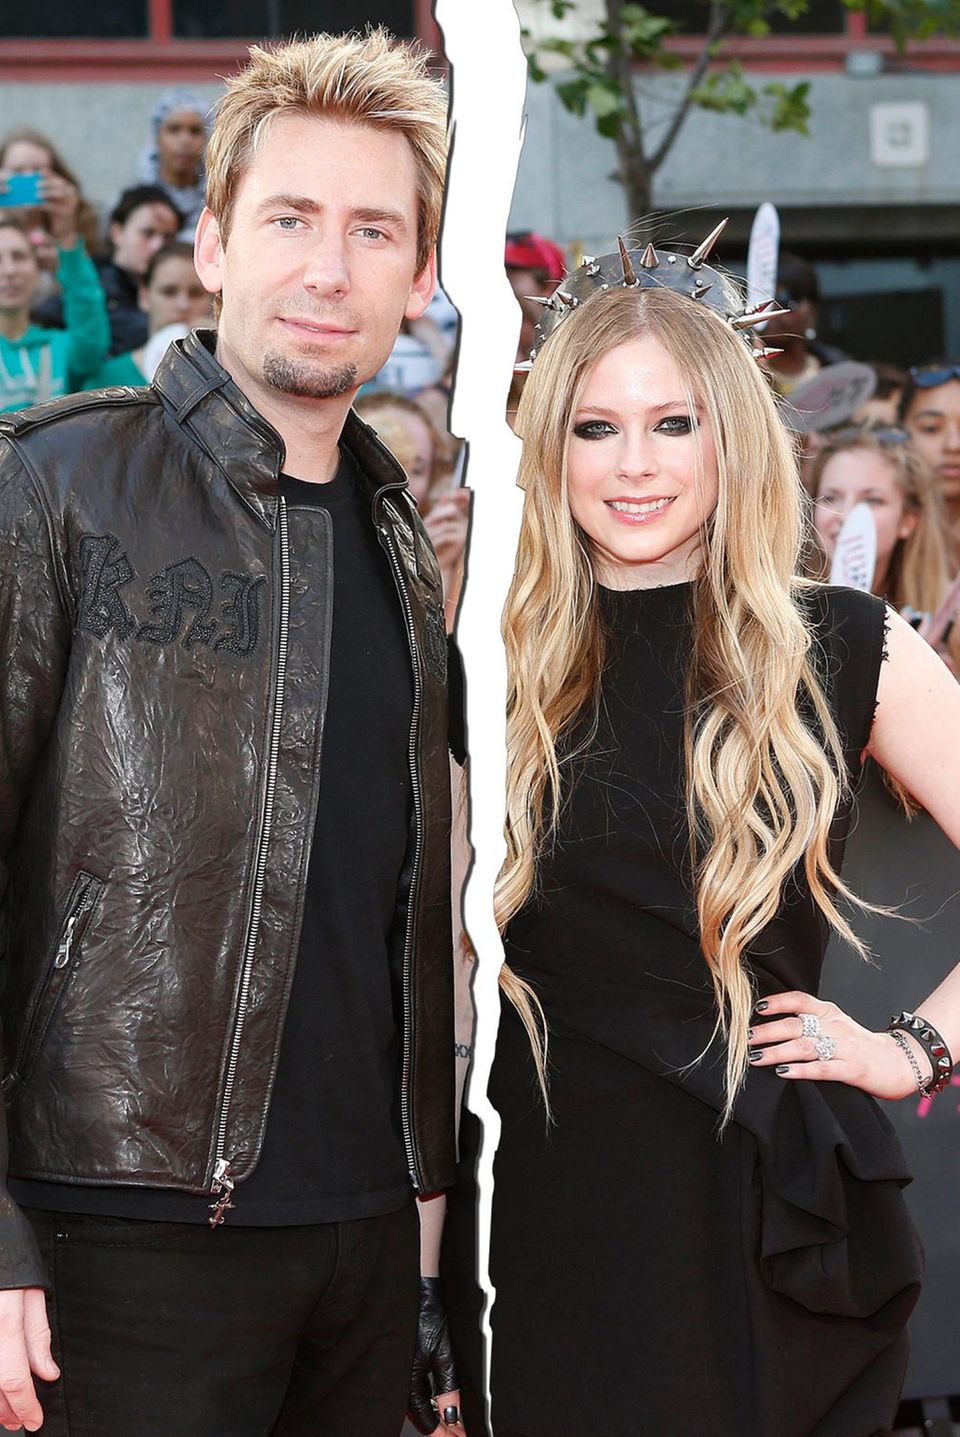 Avril Lavigne, Chad Kroeger